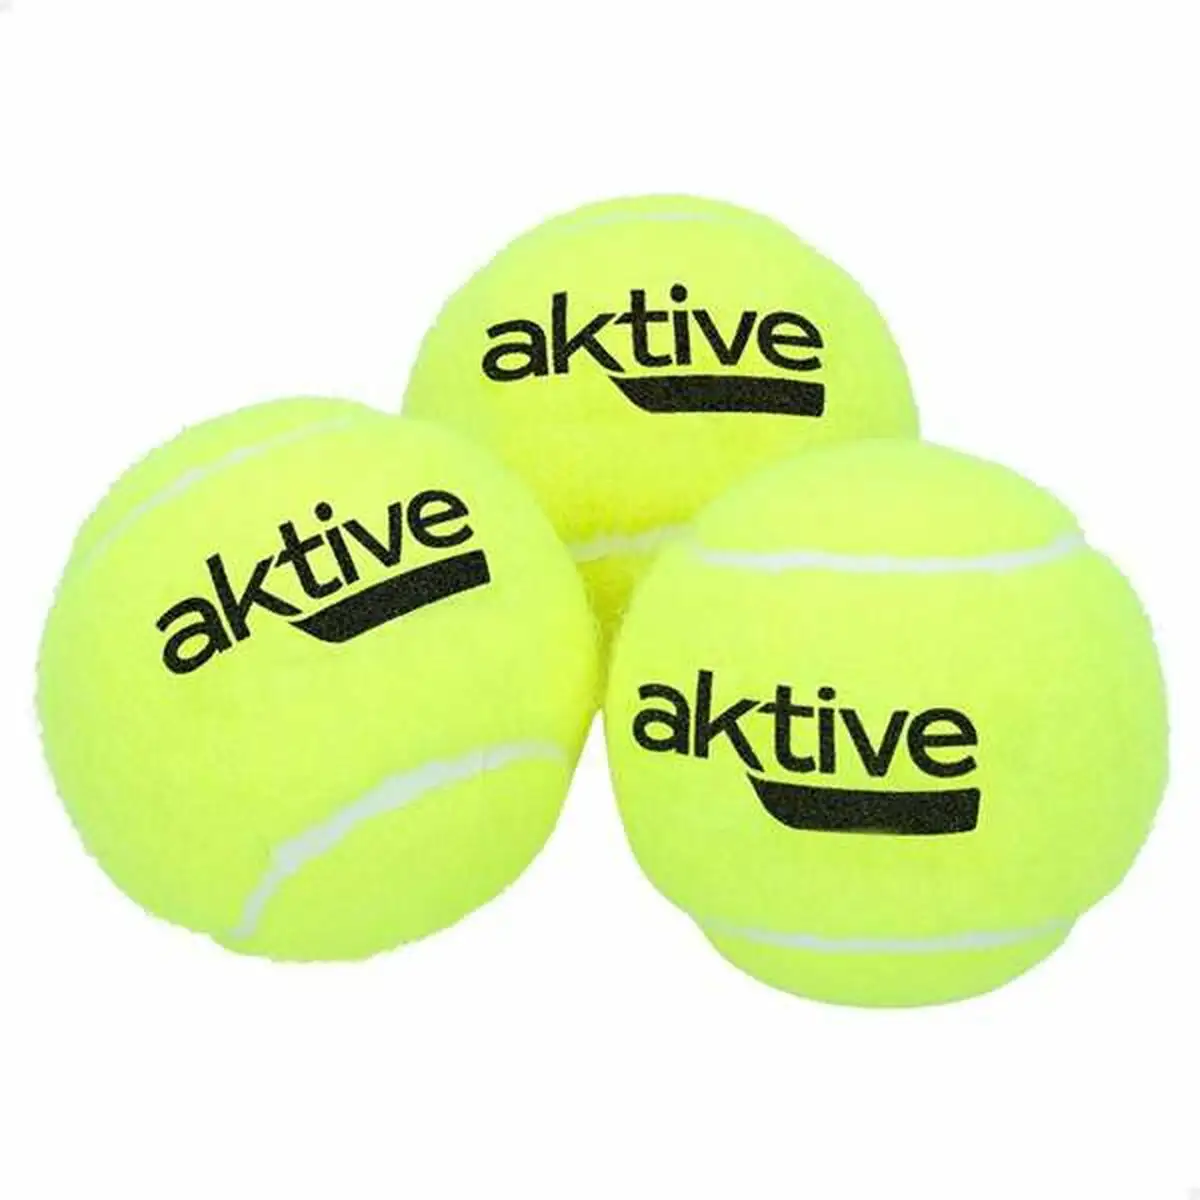 Balles de tennis aktive pro 3 unites_9199. DIAYTAR SENEGAL - Votre Portail Vers l'Élégance Accessible. Parcourez notre boutique en ligne pour découvrir des produits qui incarnent le luxe à des prix abordables.